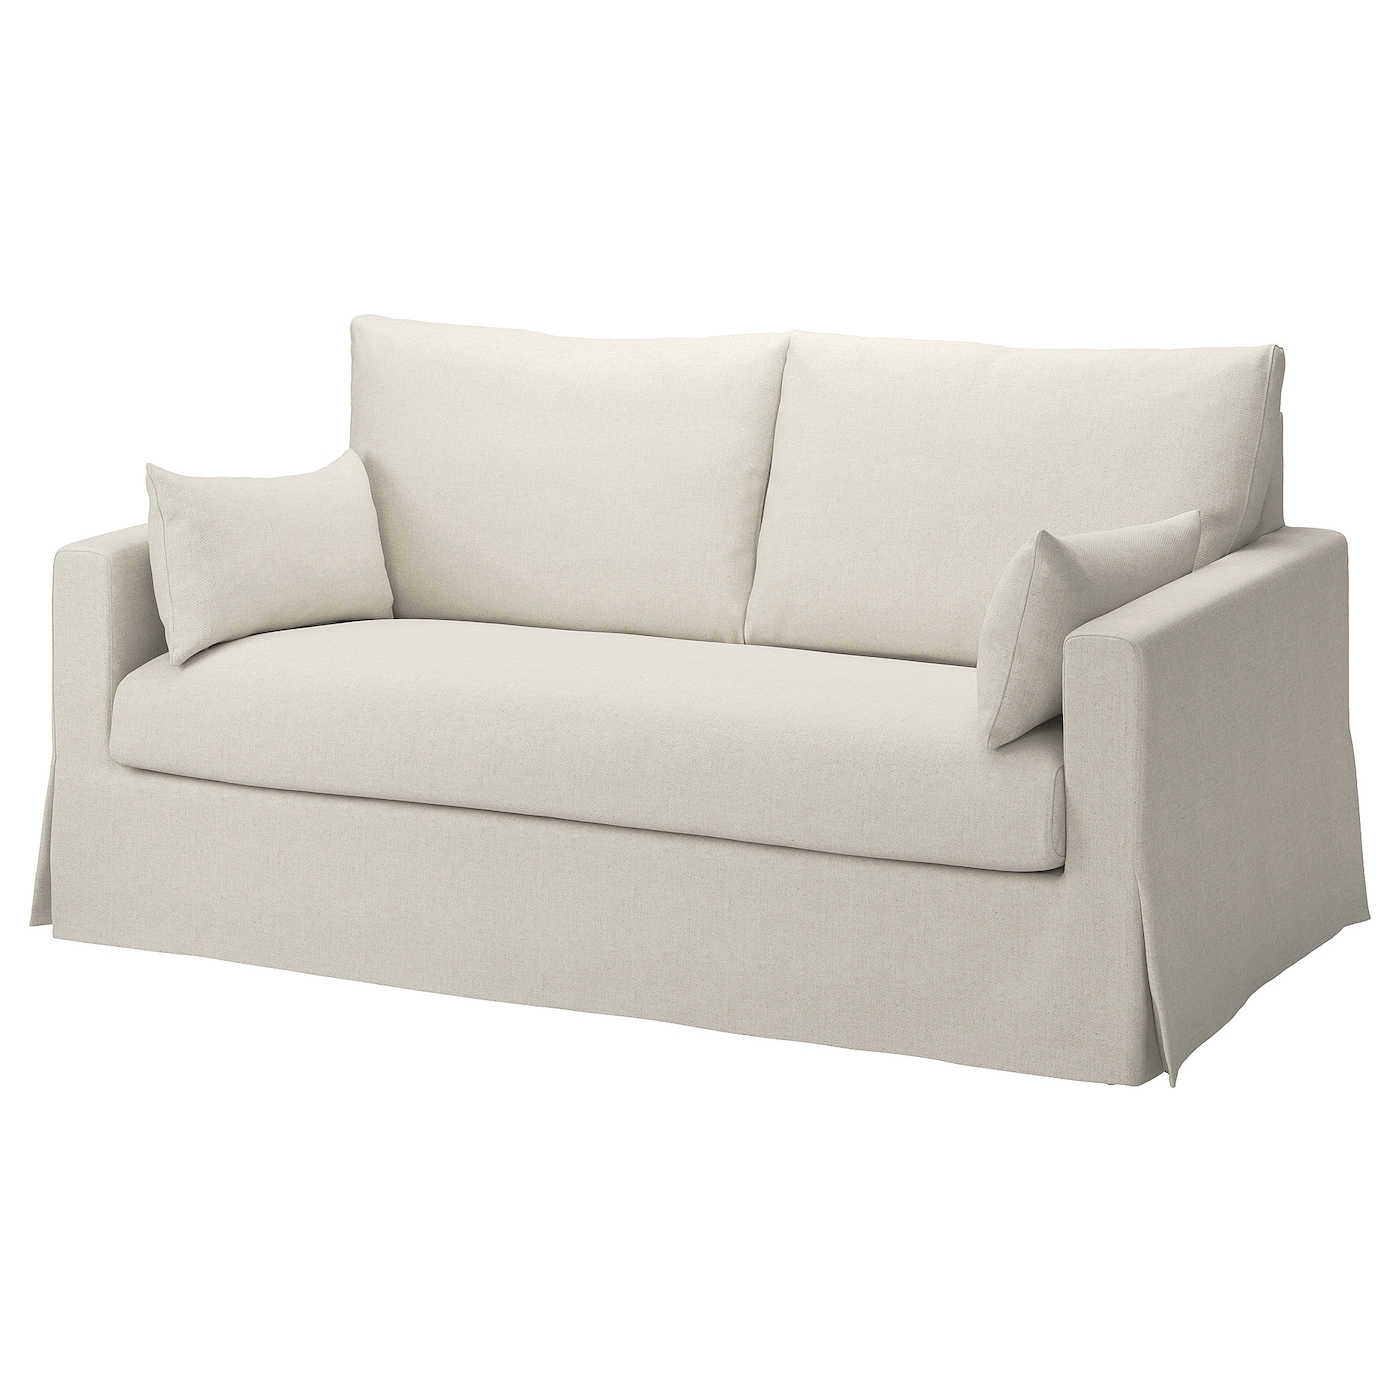 Чехол на 2-местный диван - HYLTARP IKEA/ ХУЛТАРП ИКЕА, серо-белый